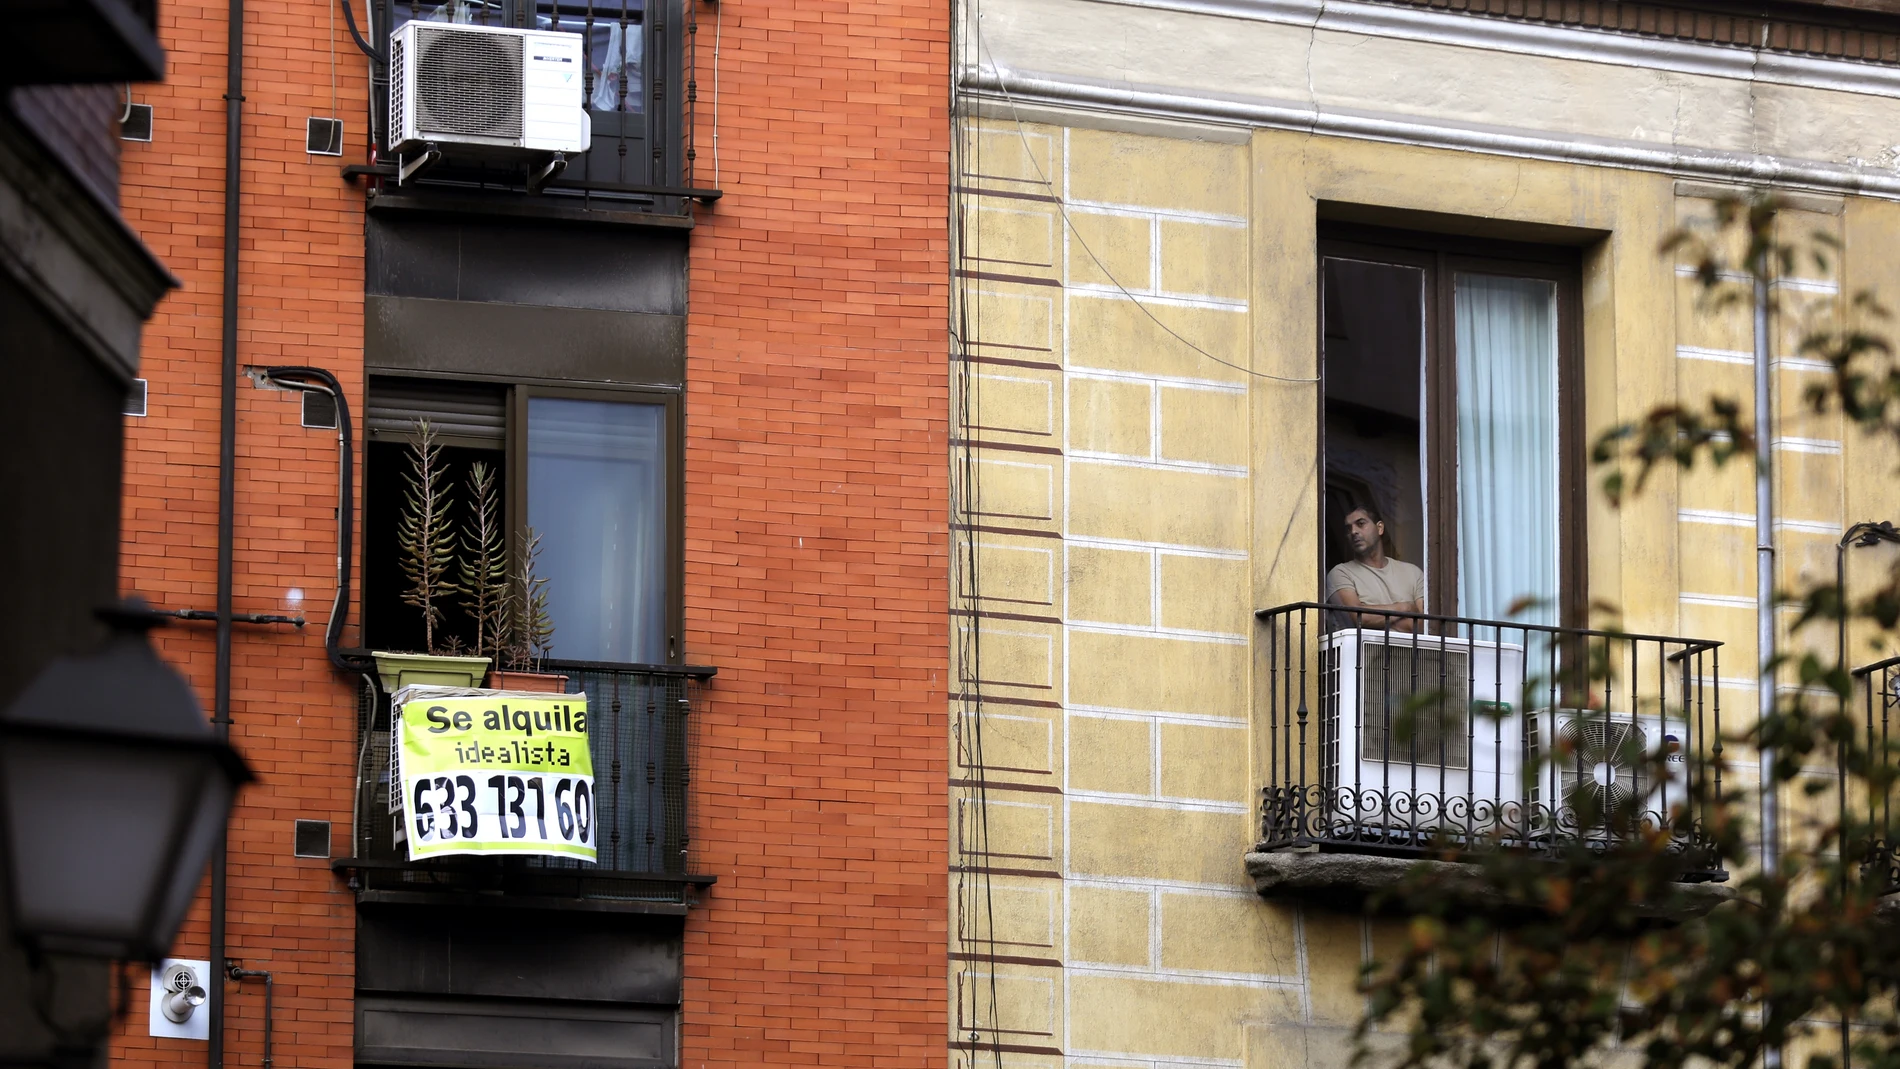 Dos balcones en el que en uno de ellos se ve un cartel de "se alquila" y en el otro una persona